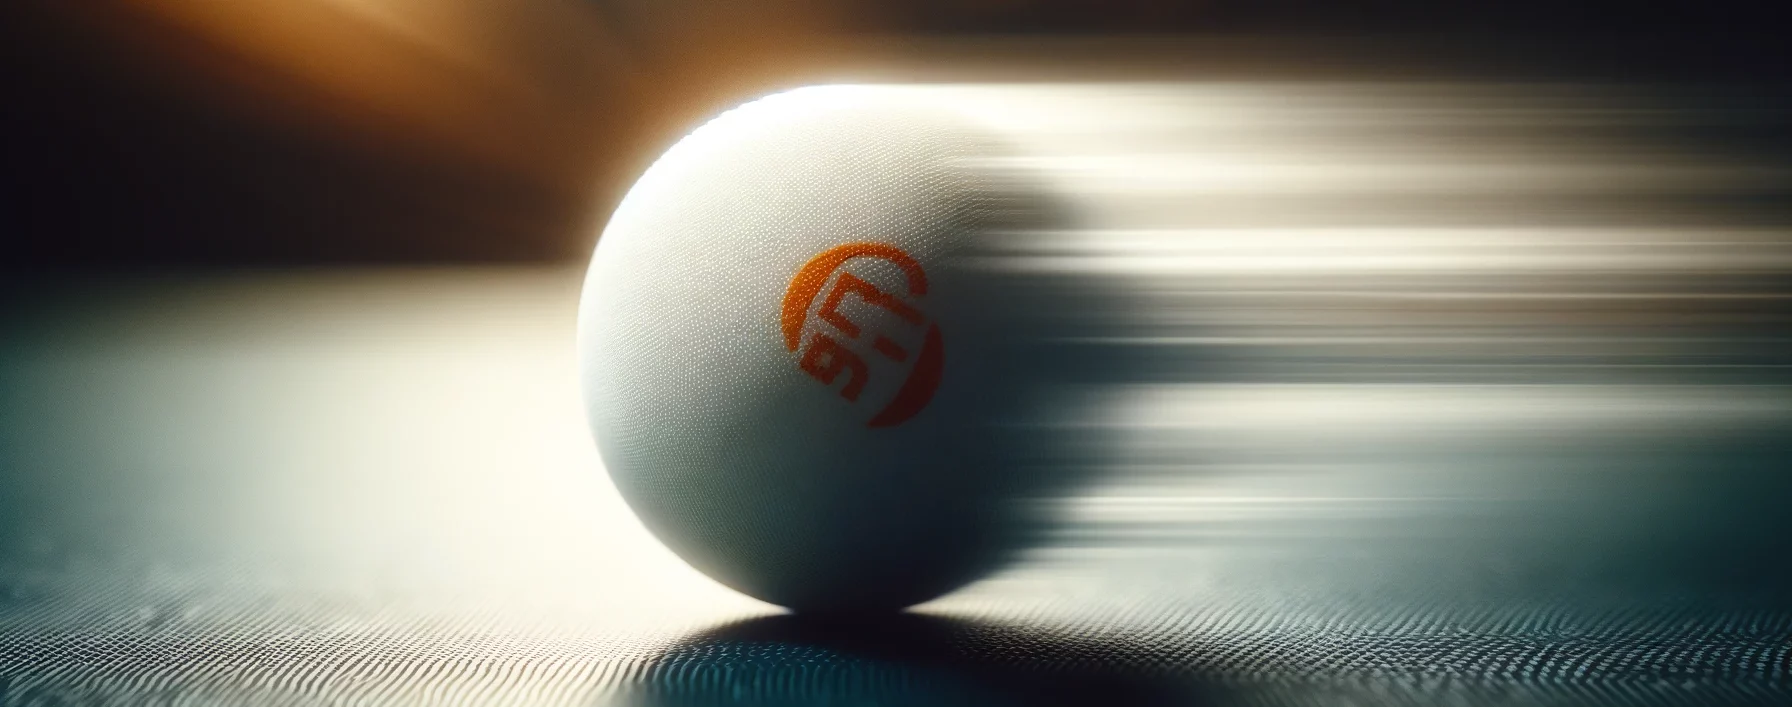 Foto eines Tischtennisballs in Bewegung, mit einem Unschärfeeffekt, der die hohe Geschwindigkeit des Balls zeigt.